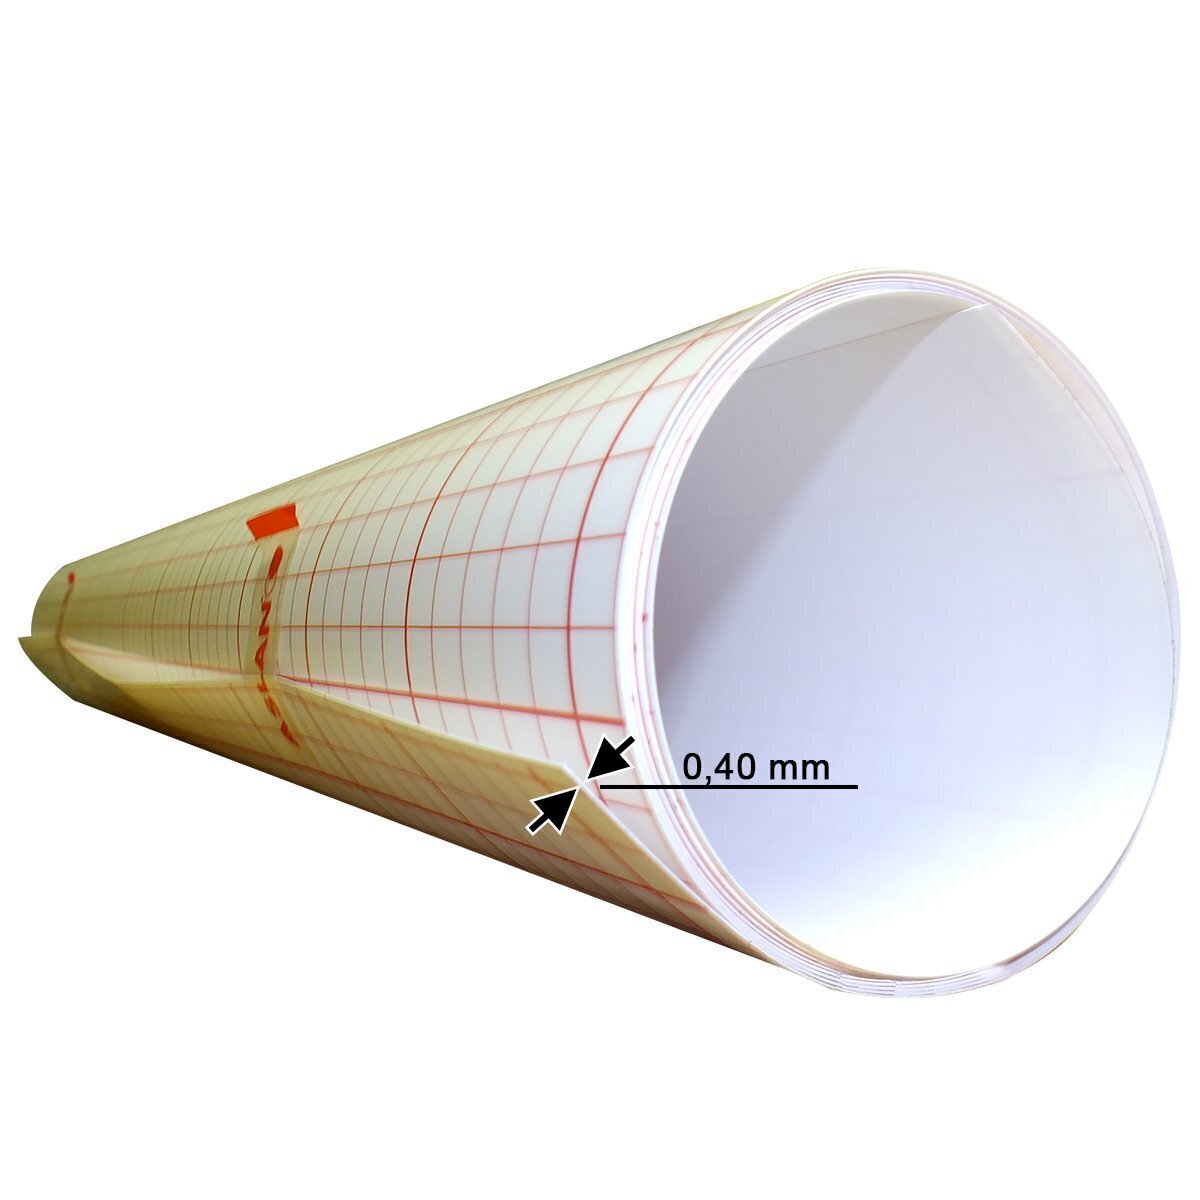 ASLAN-Selbstklebefolie 0,35 mm, 1 m x 60 cm